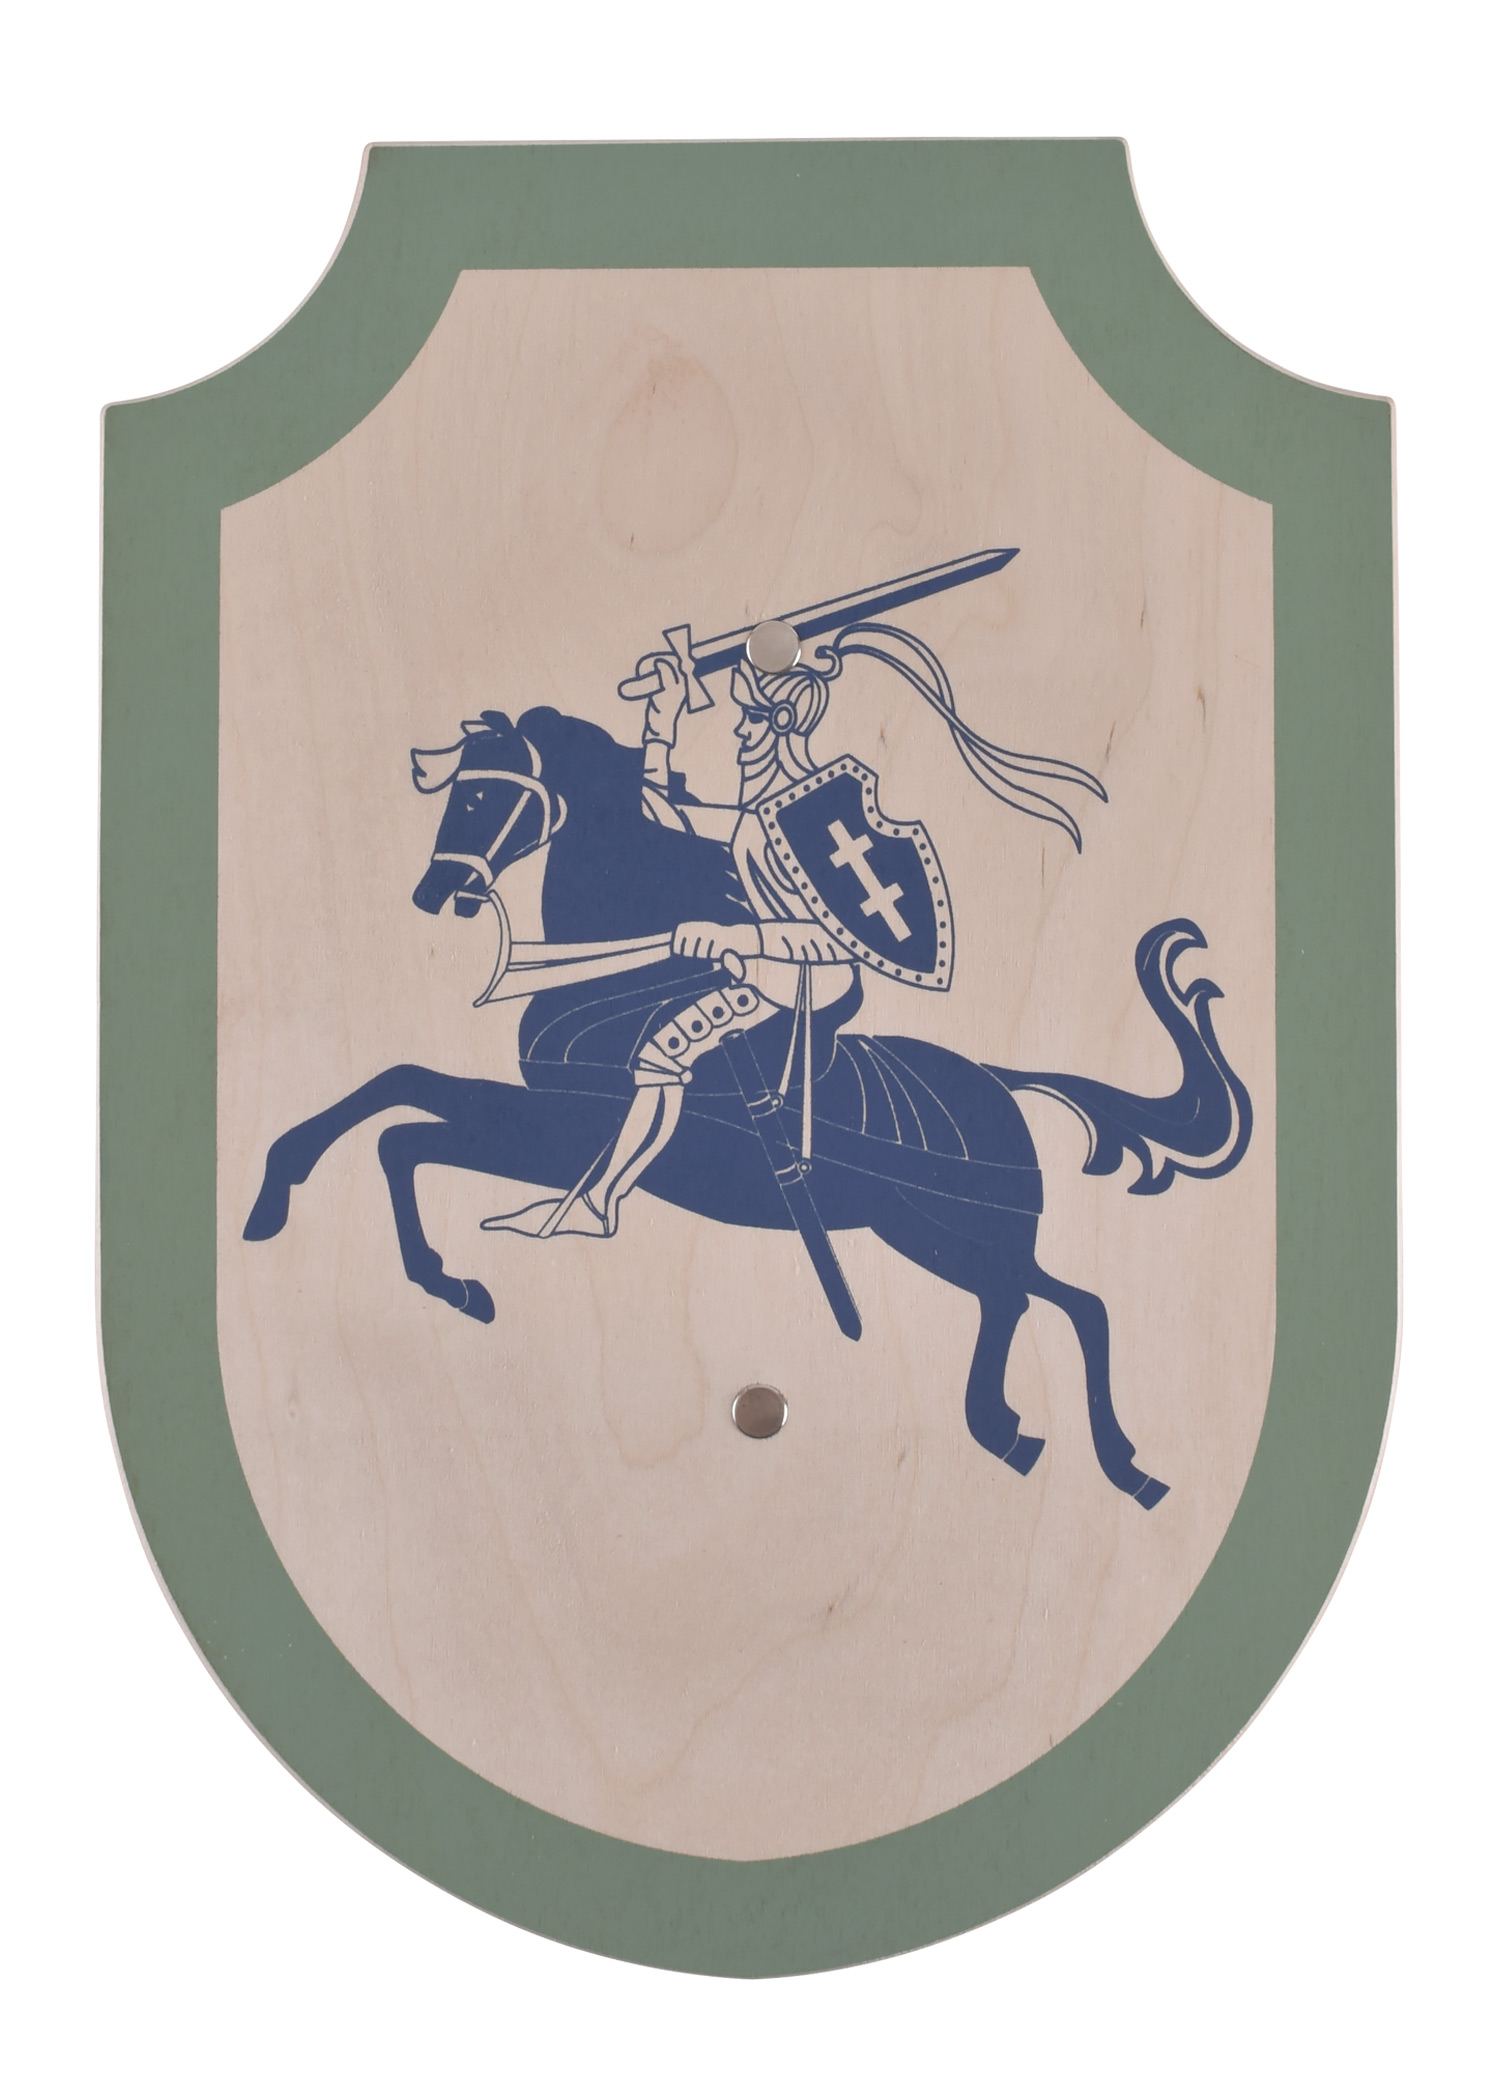 Kinder Holzschild Ritter Simon der Stürmische, Farbe blau/grün